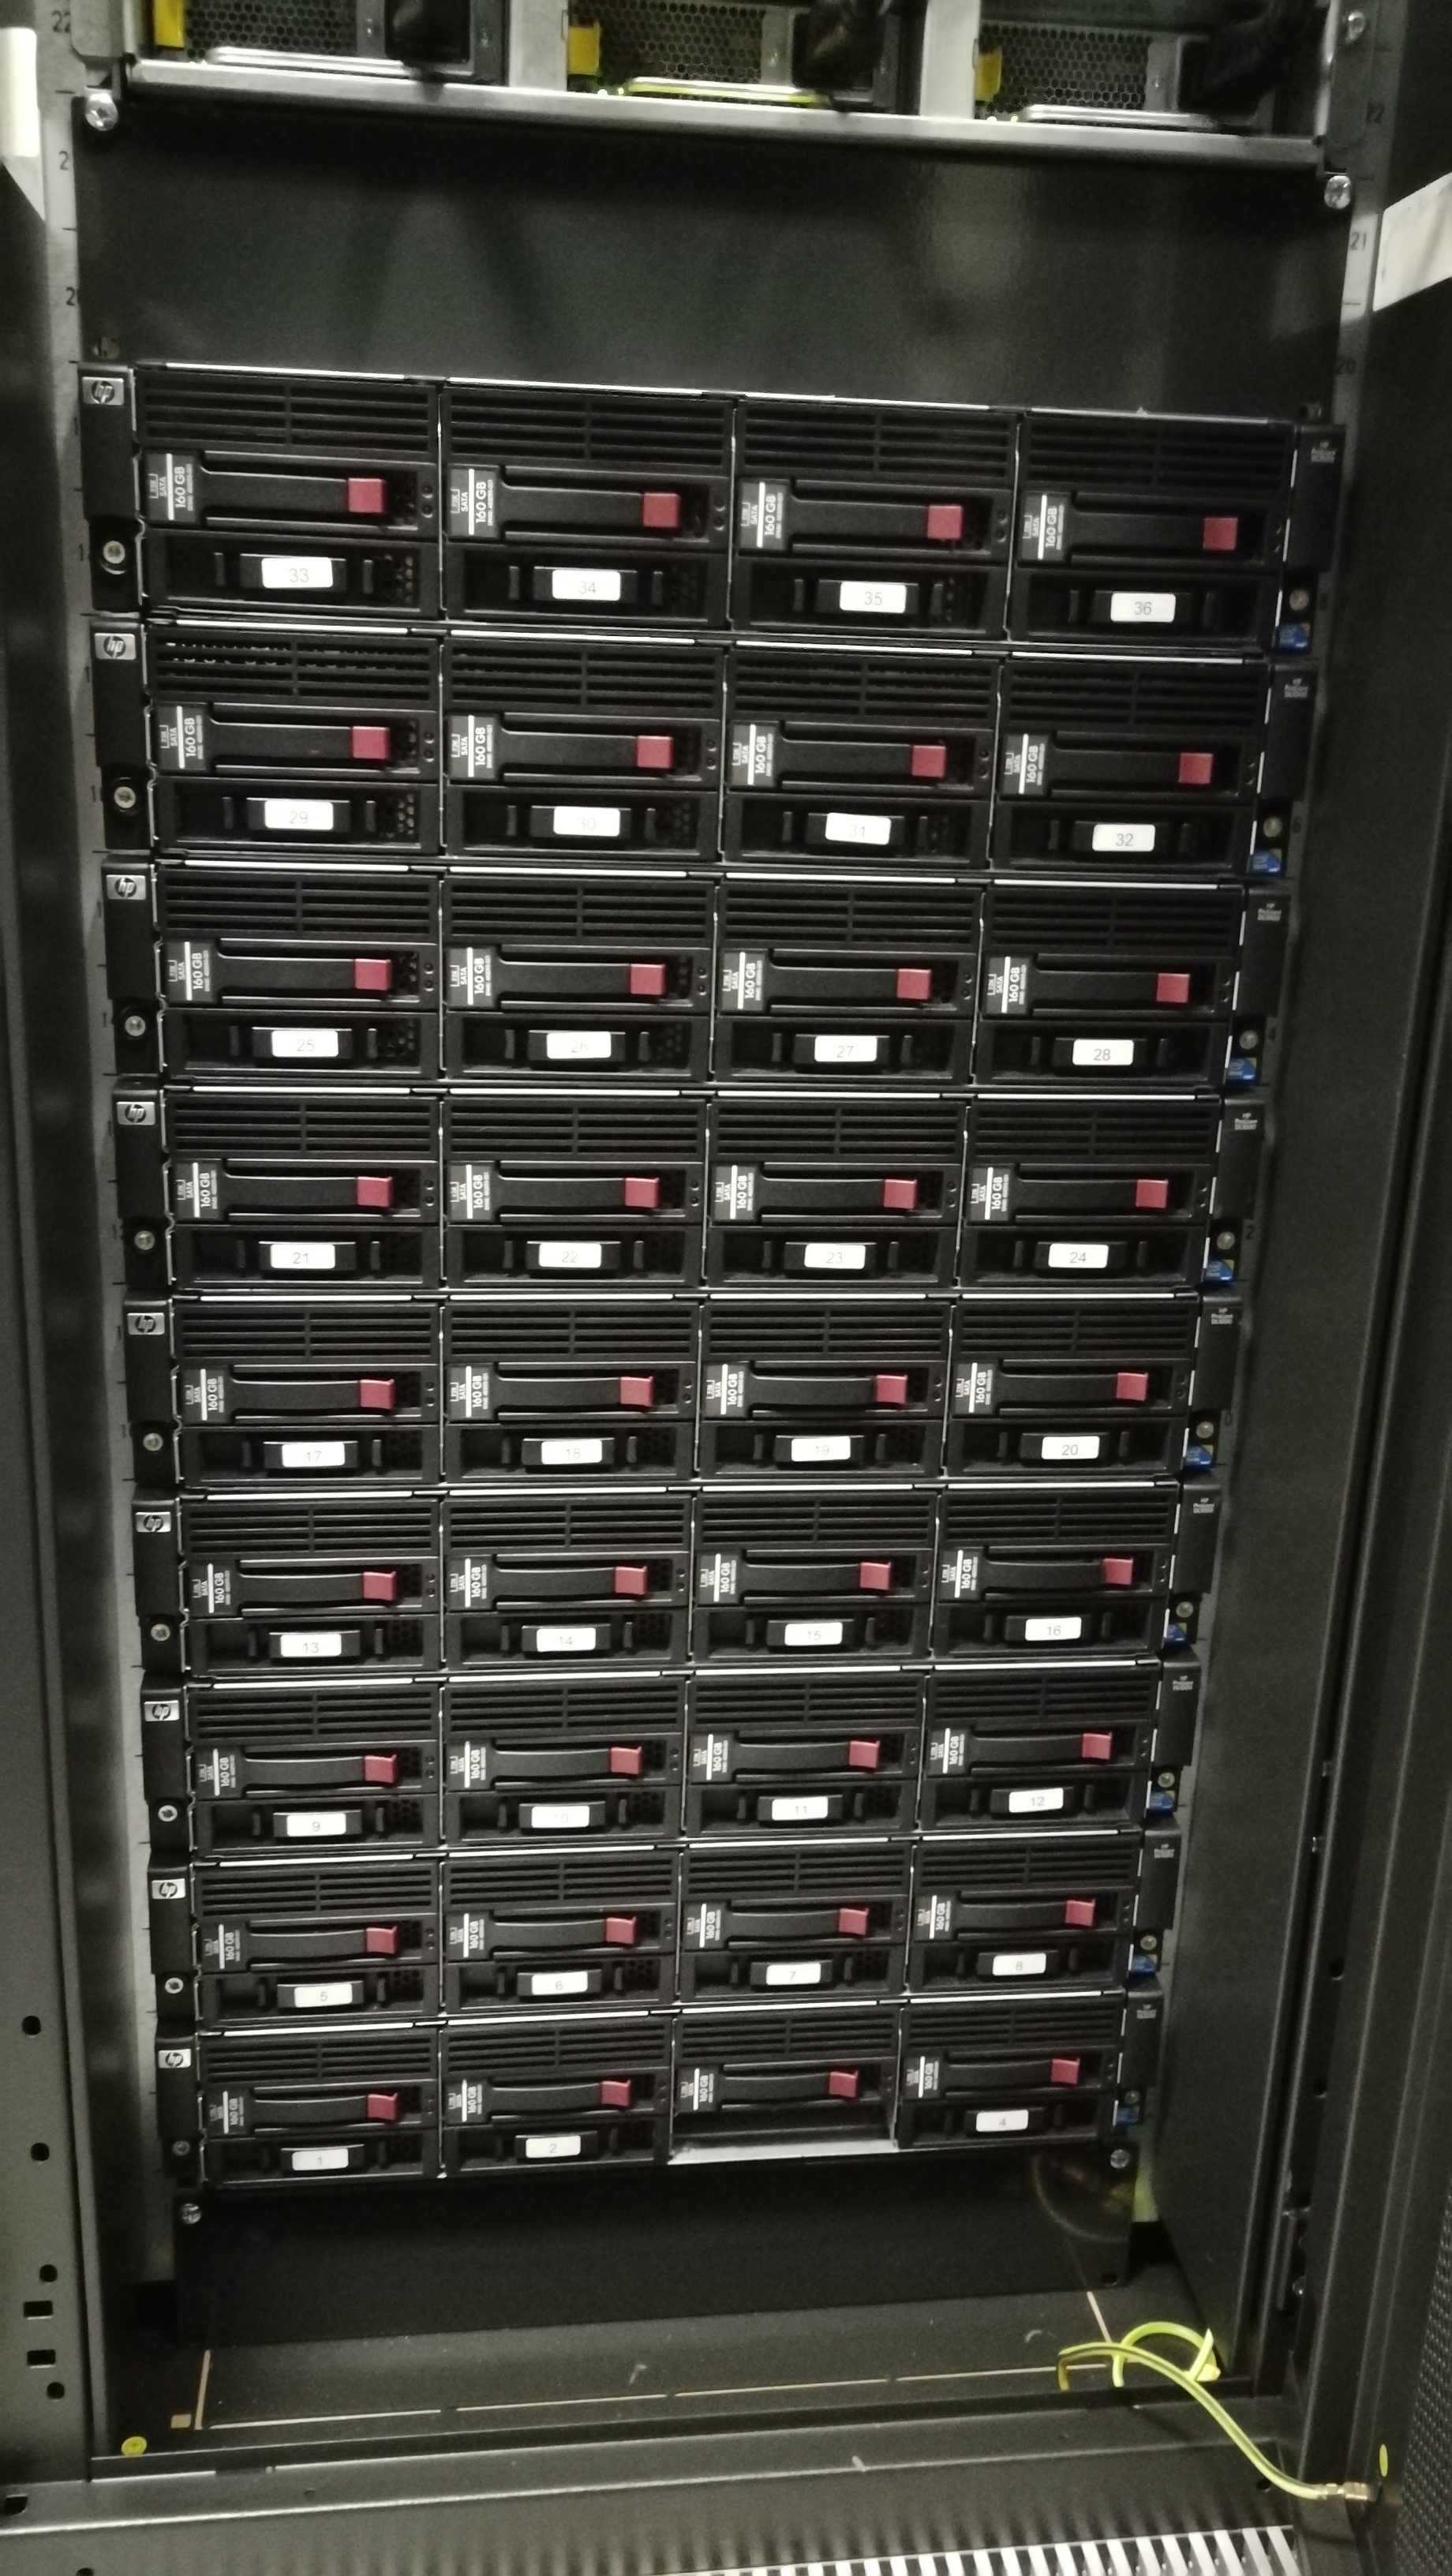 Solsa Smp Multicore Supercomputer